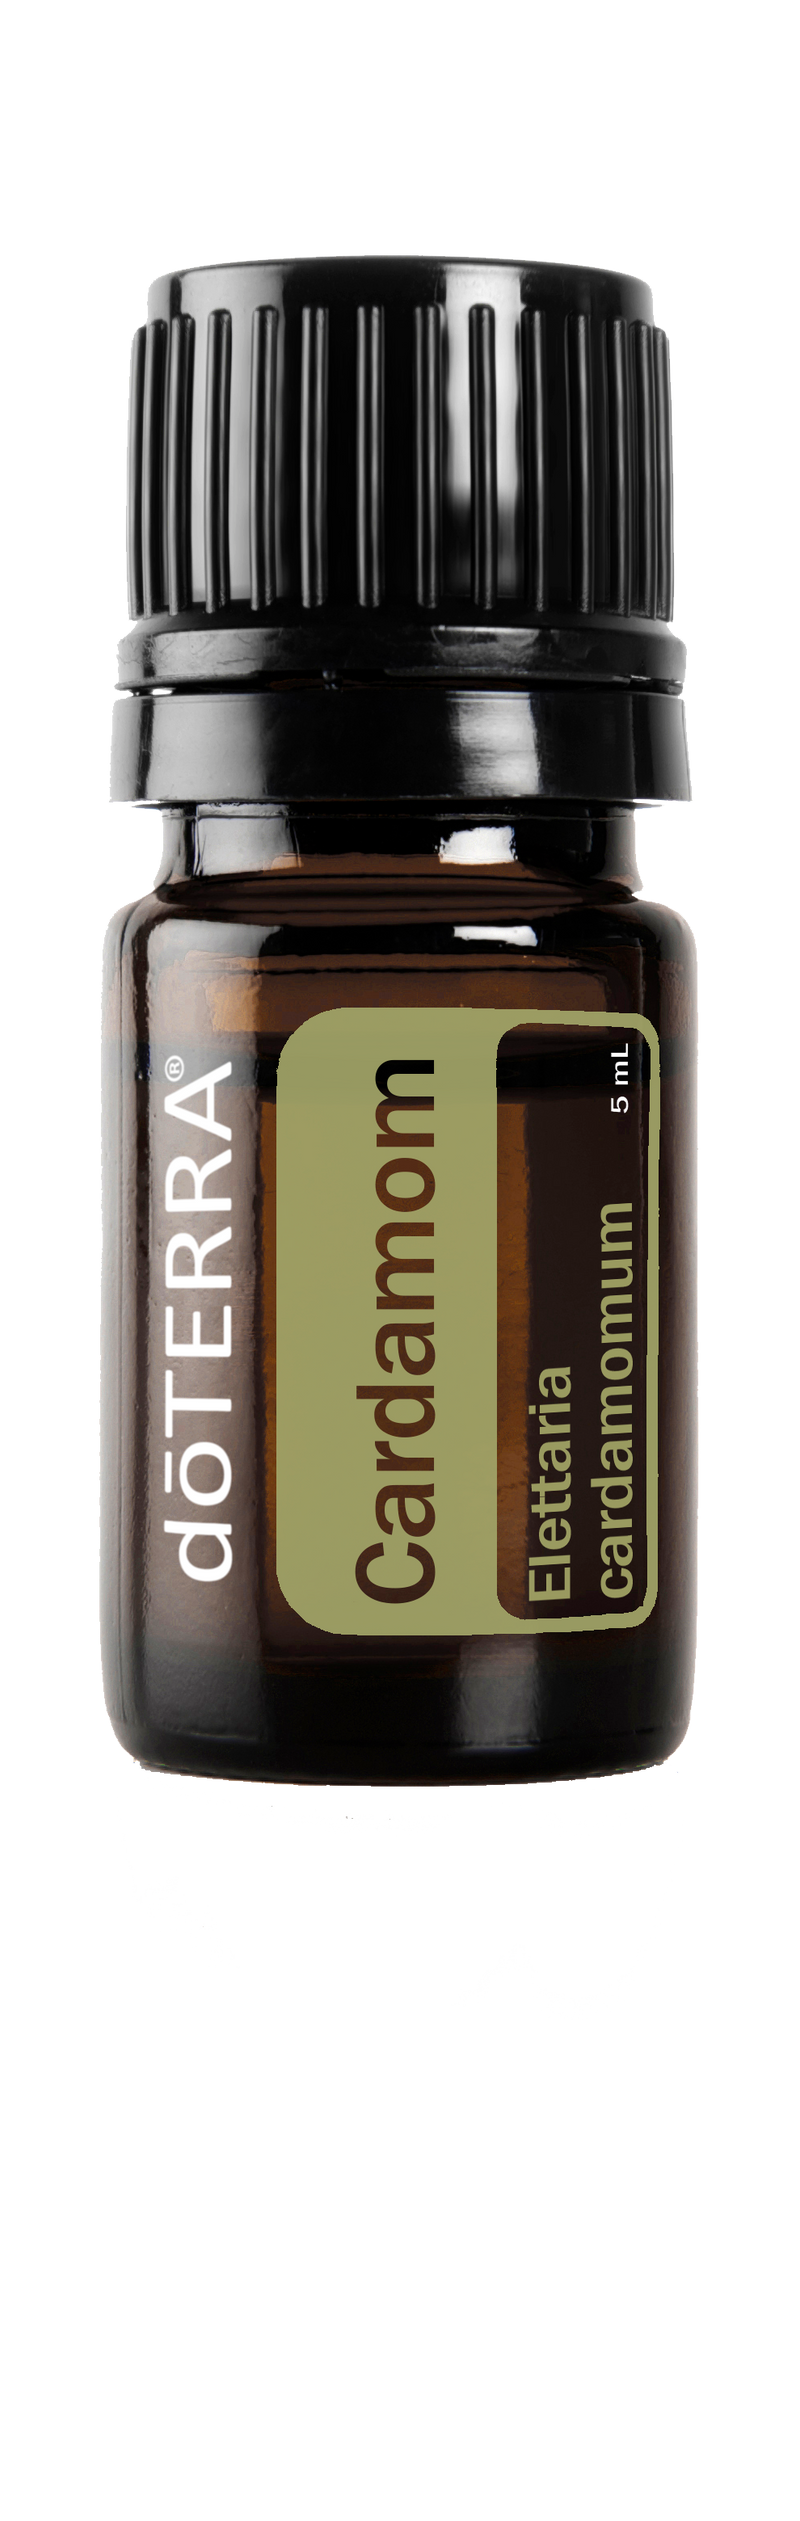 CARDAMOM - dōTERRA Essential Oils 5 ml